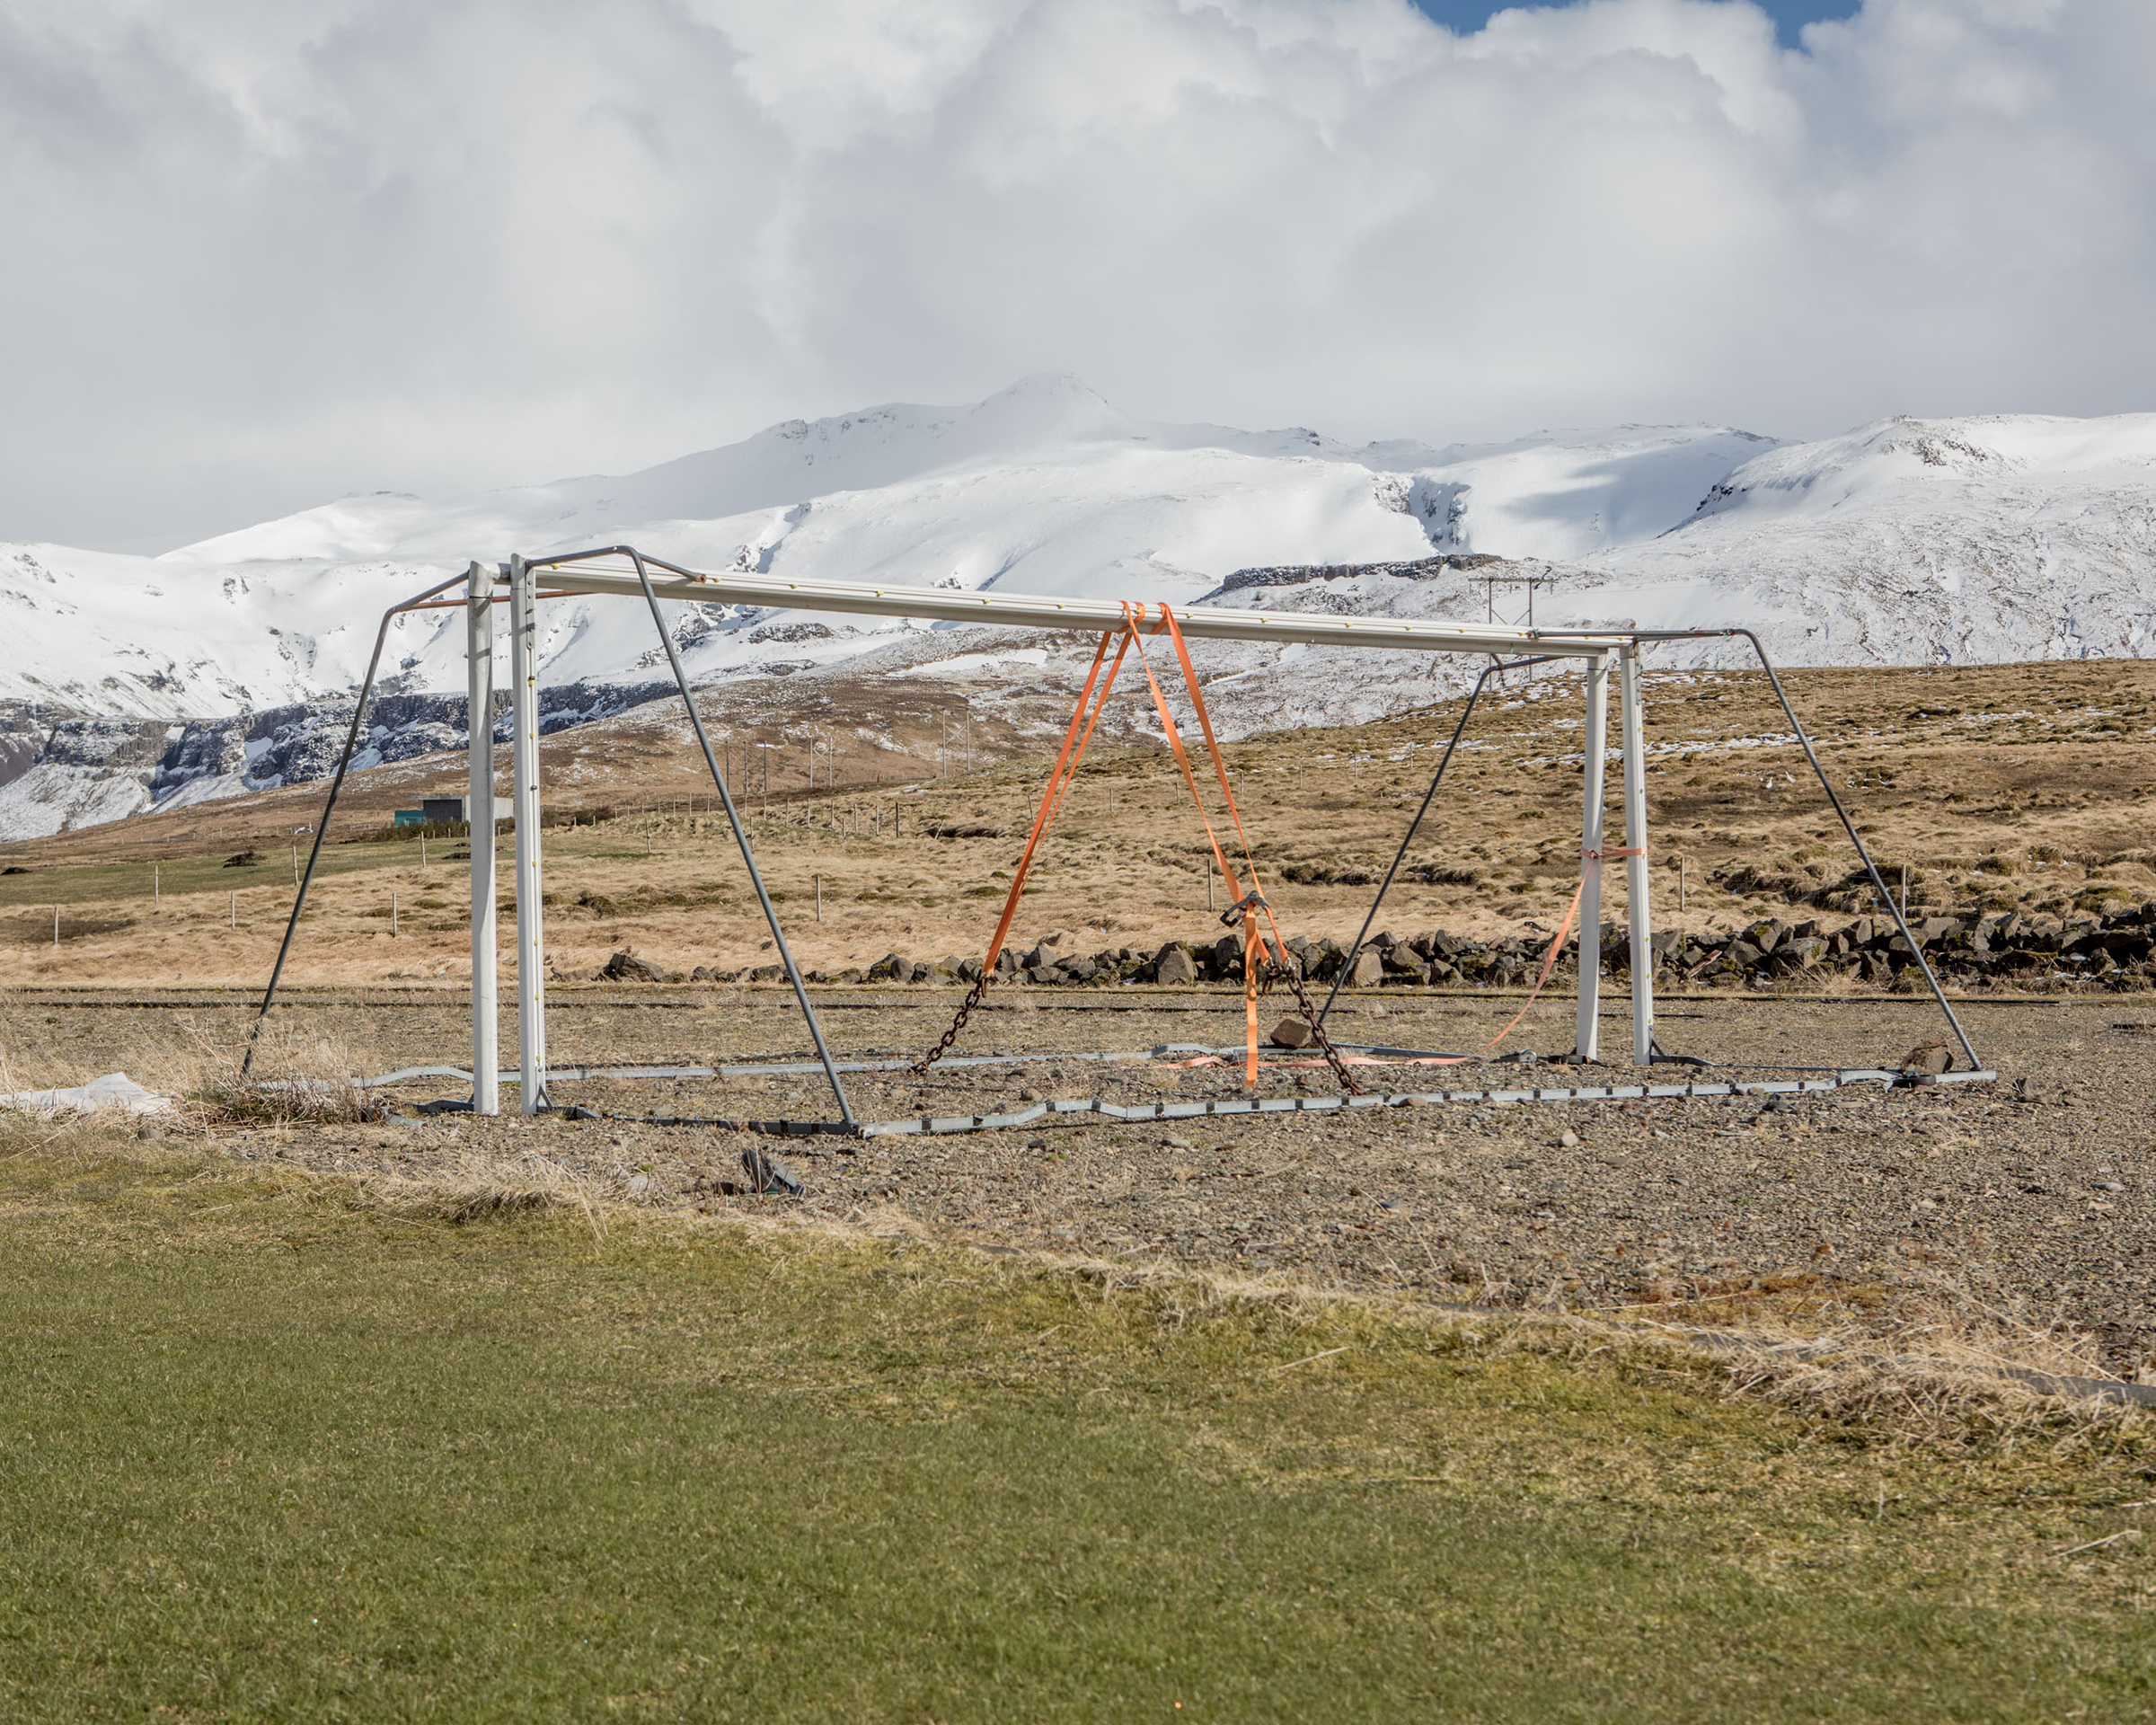 Из-за особенностей климата Исландии местные футбольные клубы начали играть на траве только с 1957 года. Так как остров расположен в месте расхождения литосферных плит, Северо-Американской и Евразийской, в регионе часто случаются землетрясения и извержения. Это во многом формирует ее ландшафт &mdash; на территории страны множество действующих вулканов, гейзеров, горячих источников. Немногочисленные поля, пригодные для тренировок, долгое время были из песка или гравия.